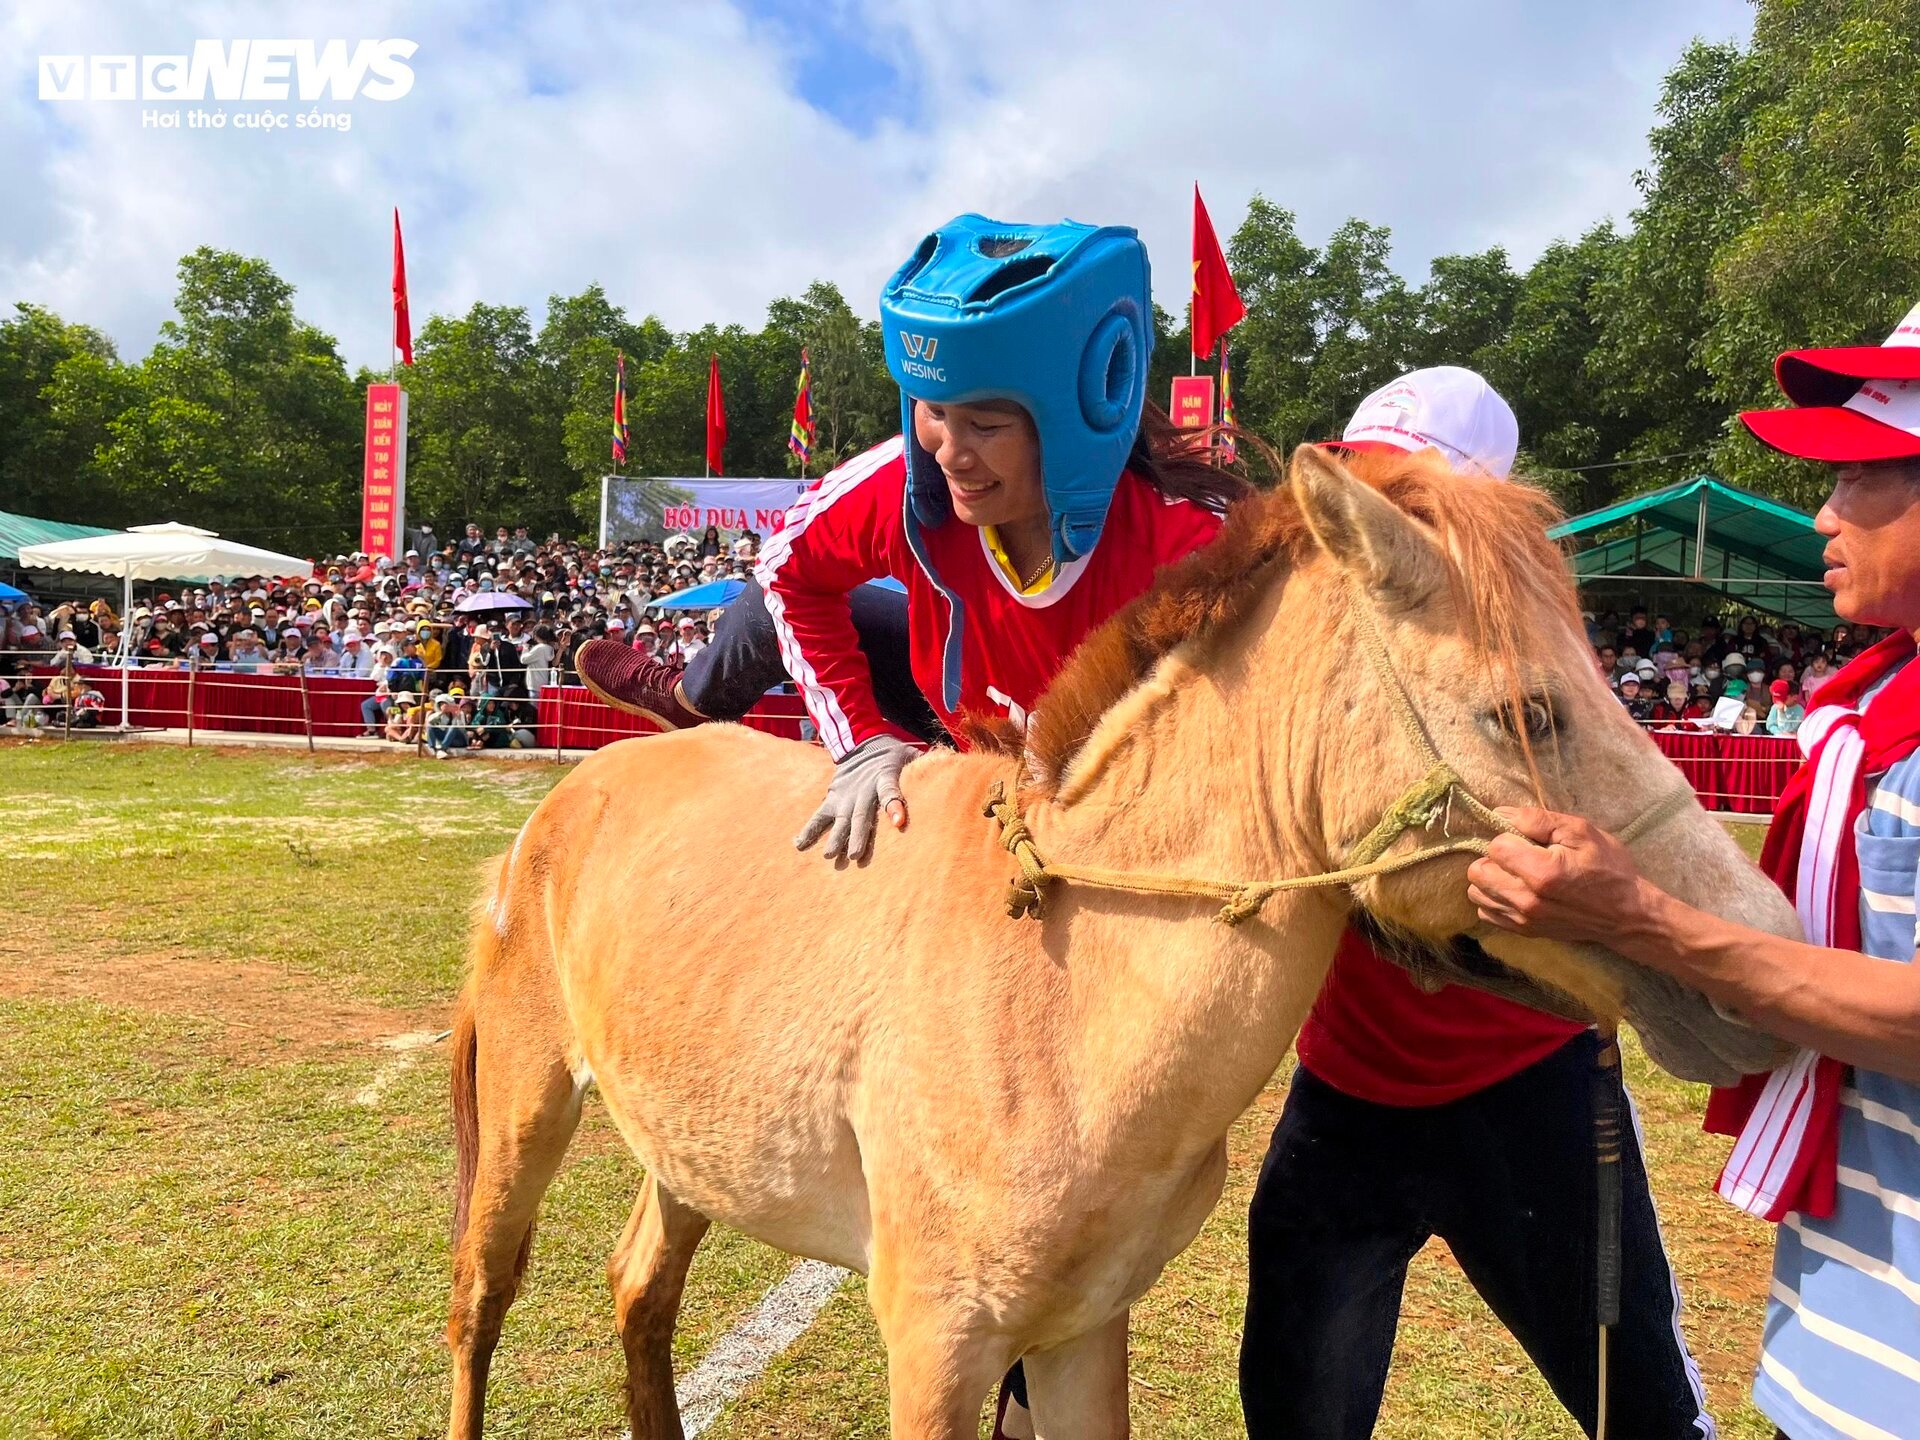 Xem nữ &quot;kỵ sĩ nông dân&quot; tranh tài tại lễ hội đua ngựa độc nhất vô nhị Phú Yên - Ảnh 5.